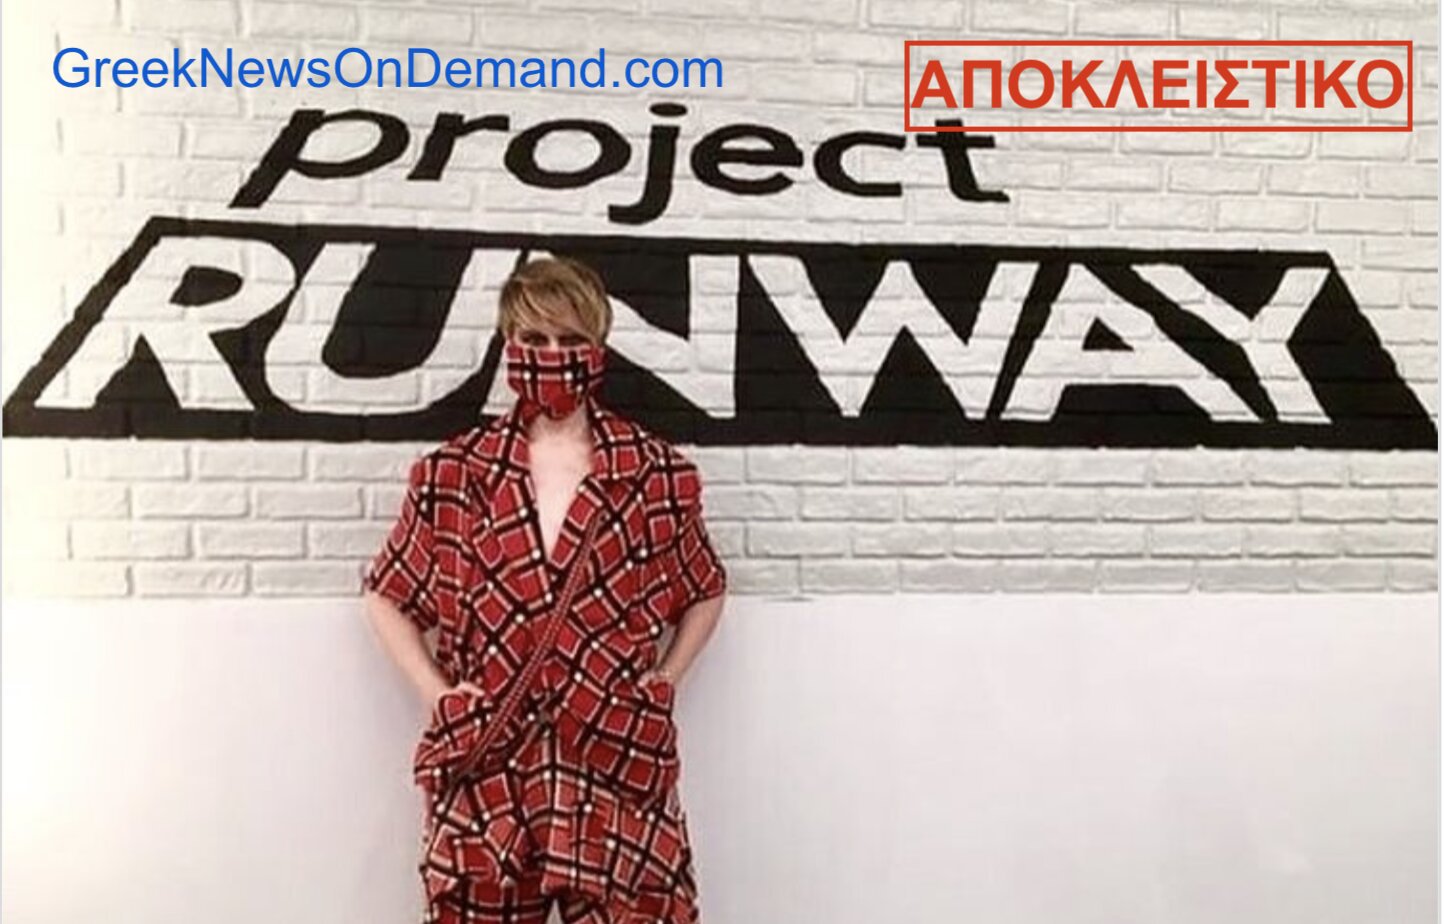 ΦΡΙΚΗ: ΑΝΩΜΑΛΟΣ διαγωνιζόμενος της πασαρέλας του Project Runway του 2019 ονόματι…«Kovid» συμμετείχε φορώντας…ΜΑΣΚΑ….!!!